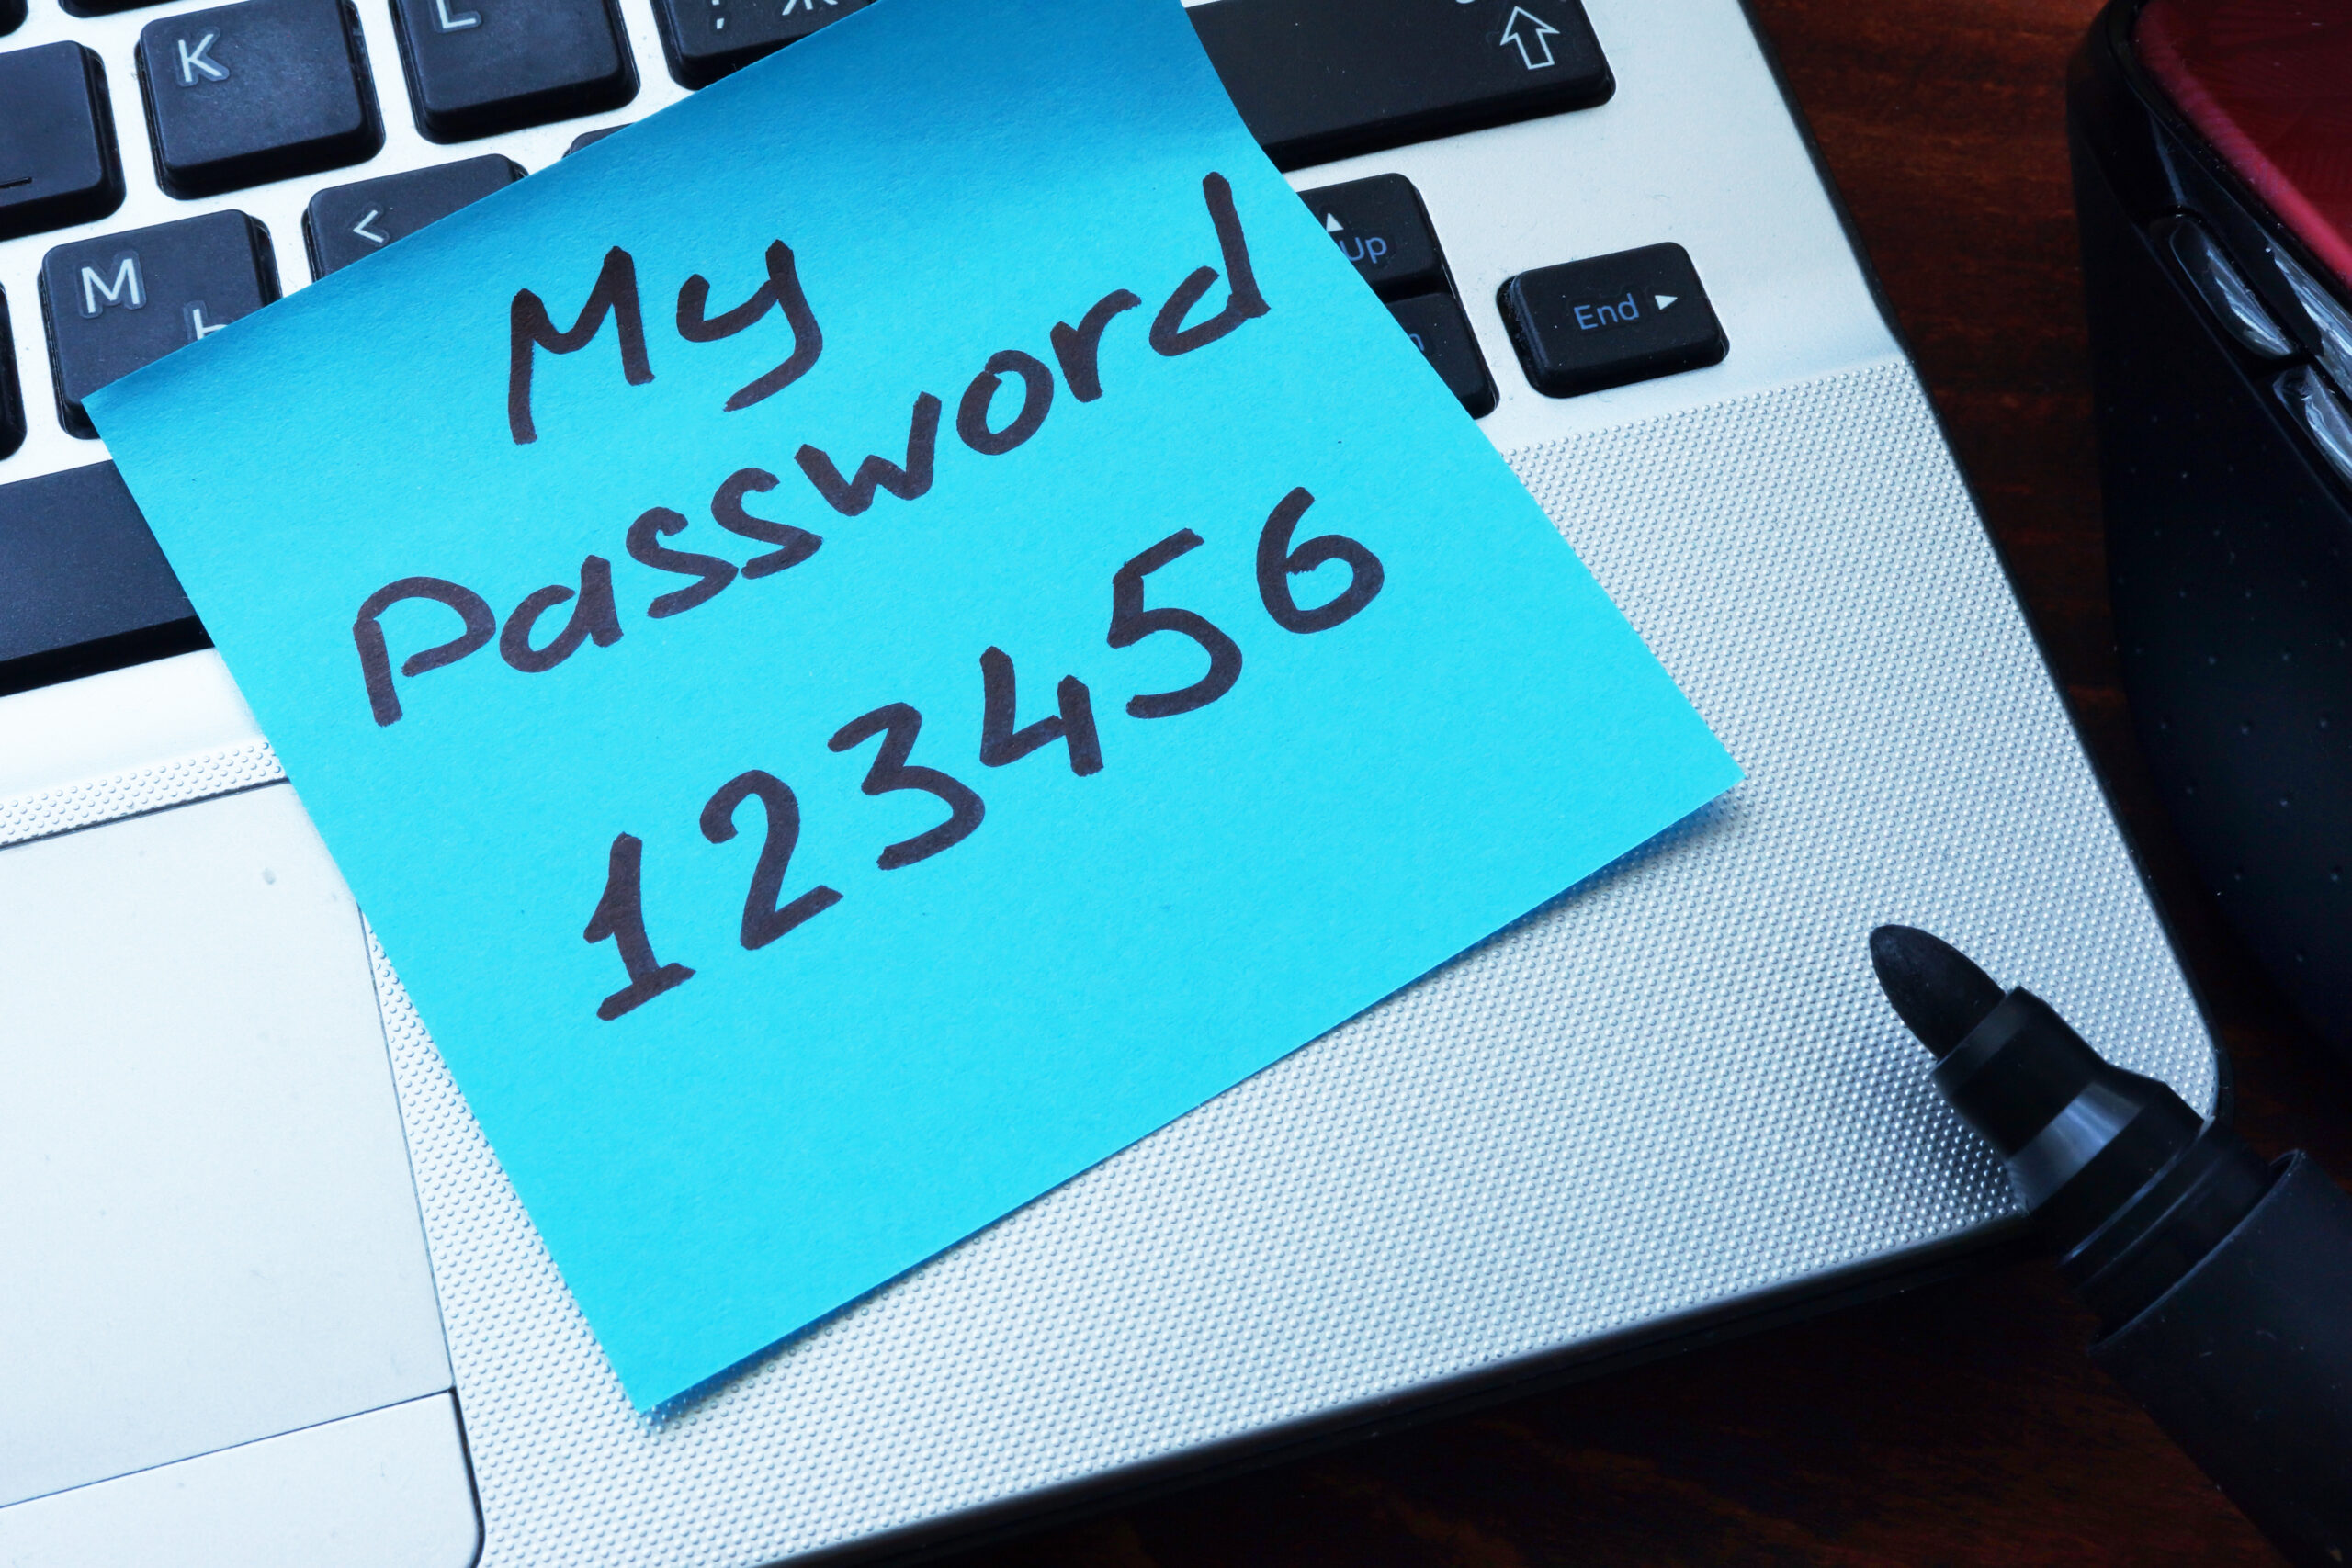 Le password che usi ti tengono al sicuro? Scopriamolo insieme